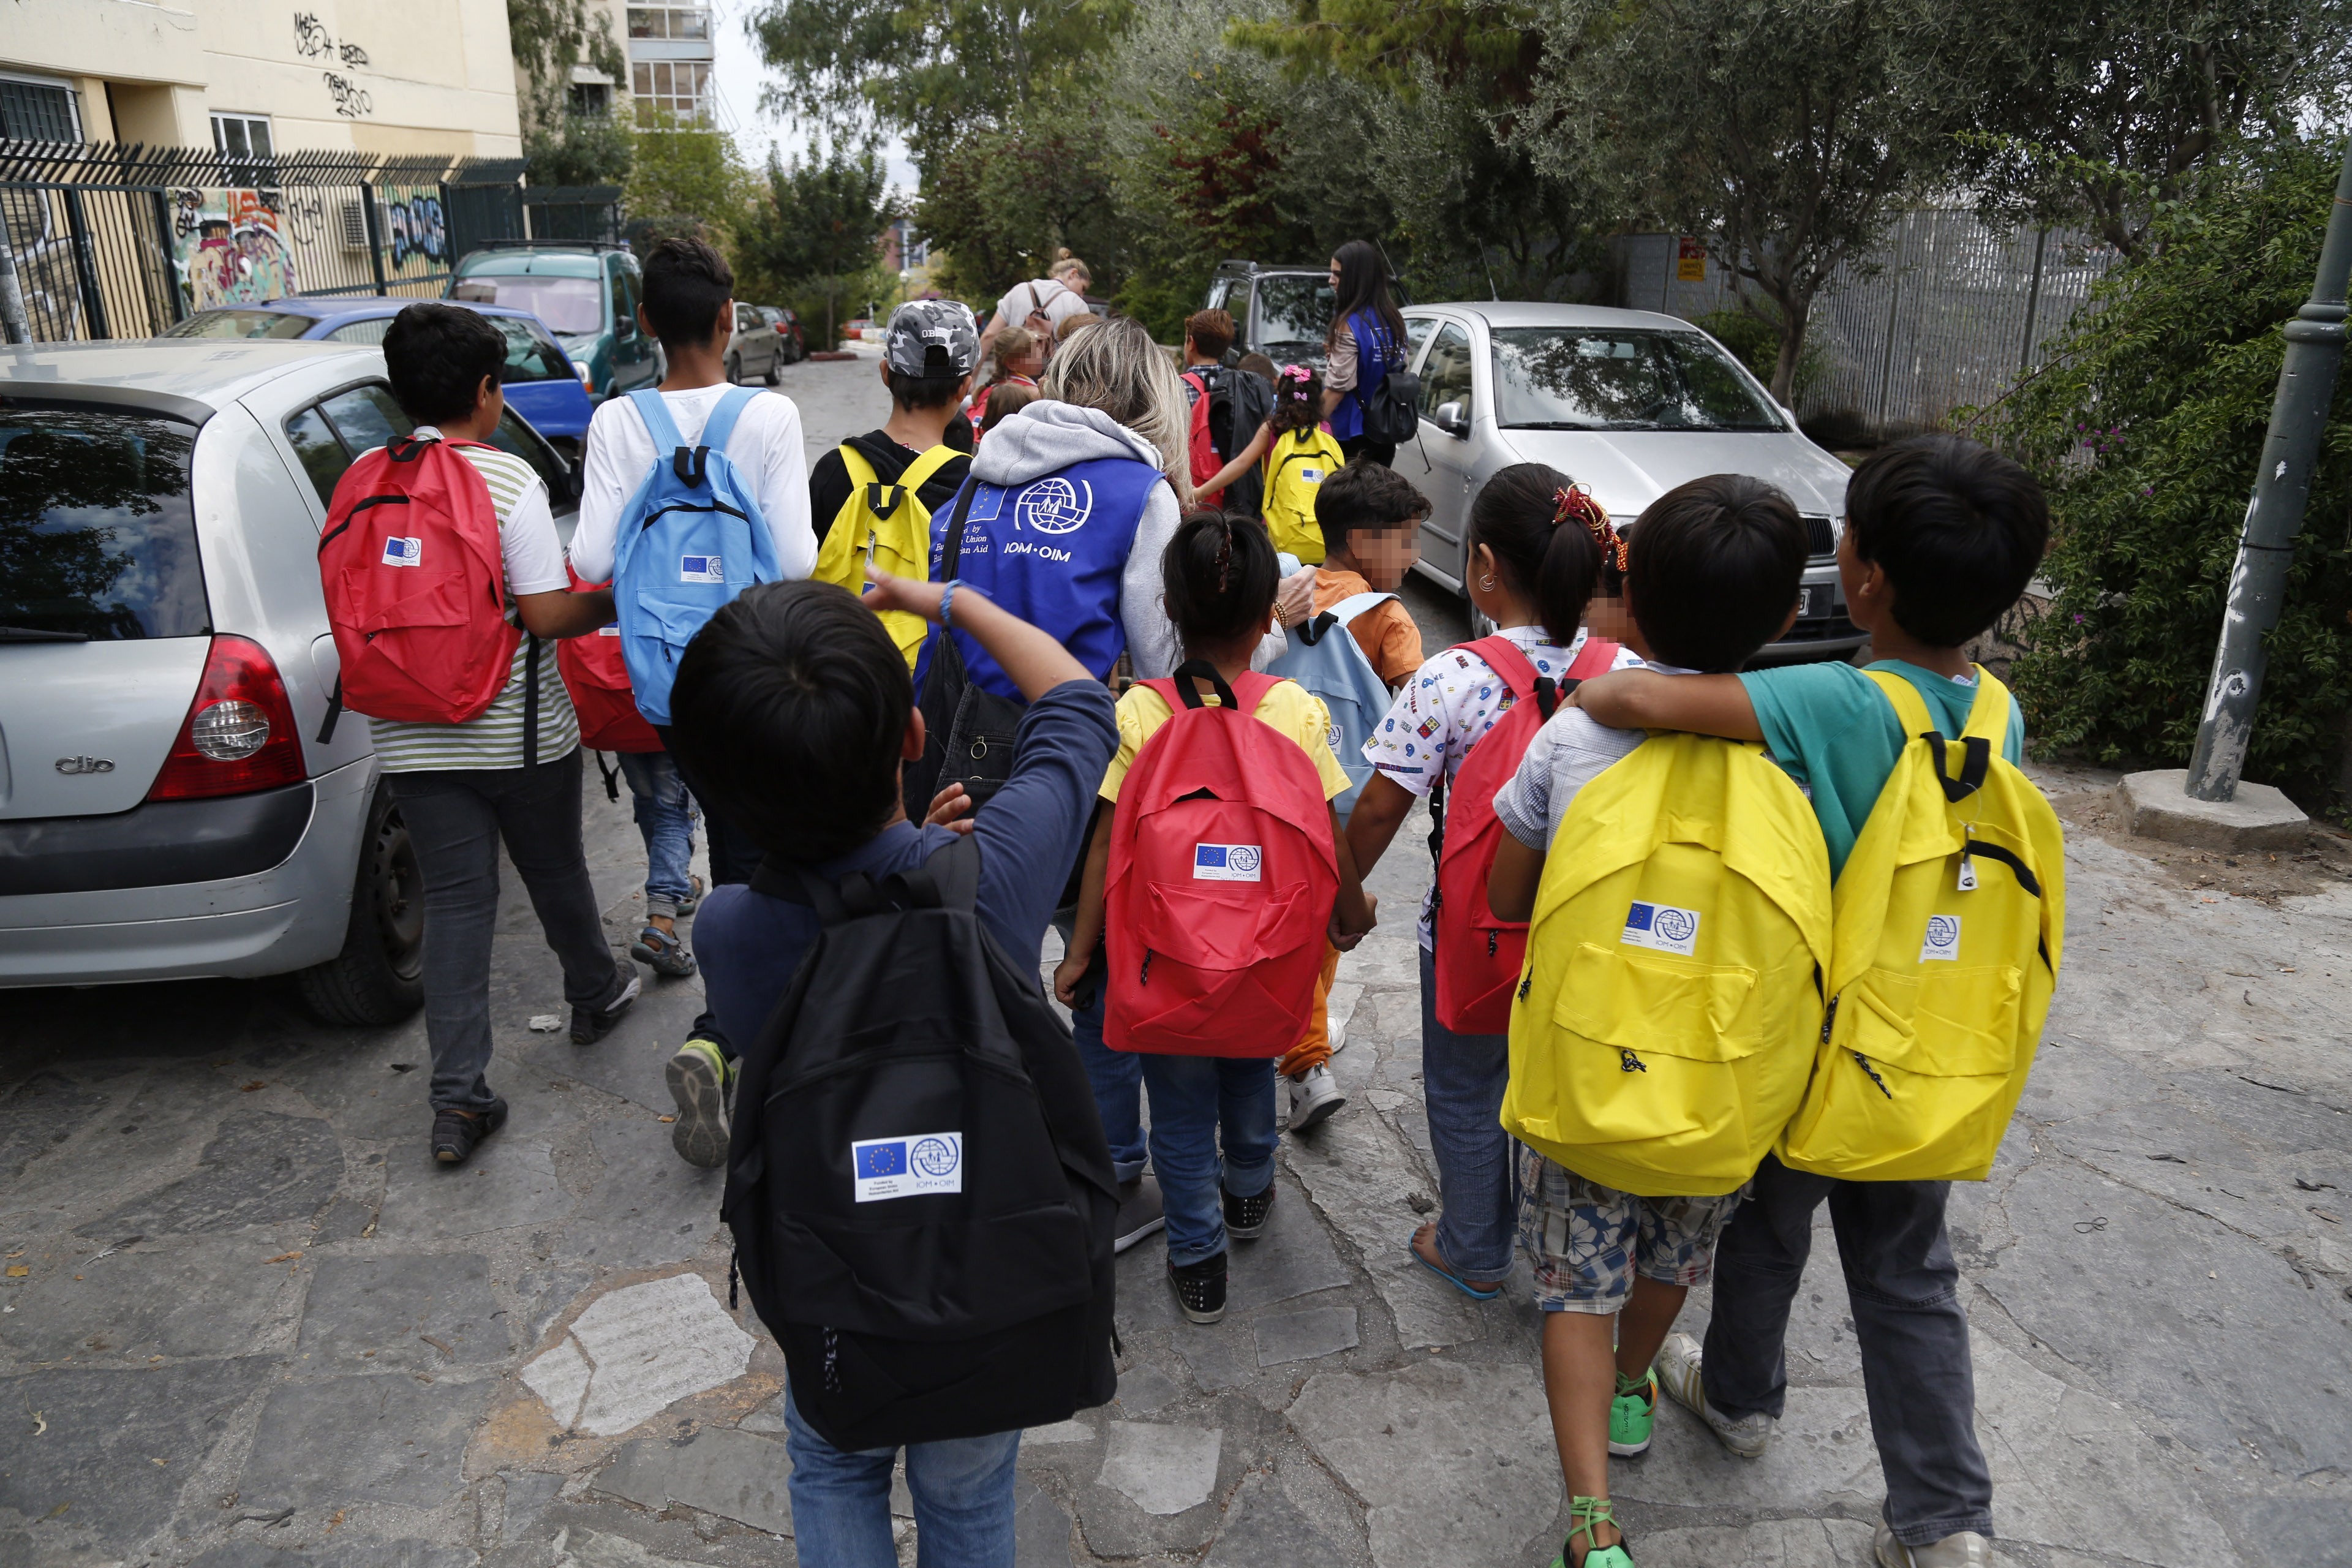  Σάμος | Αποχή από το σχολείο επειδή από σήμερα πάνε 14 προσφυγόπουλα!